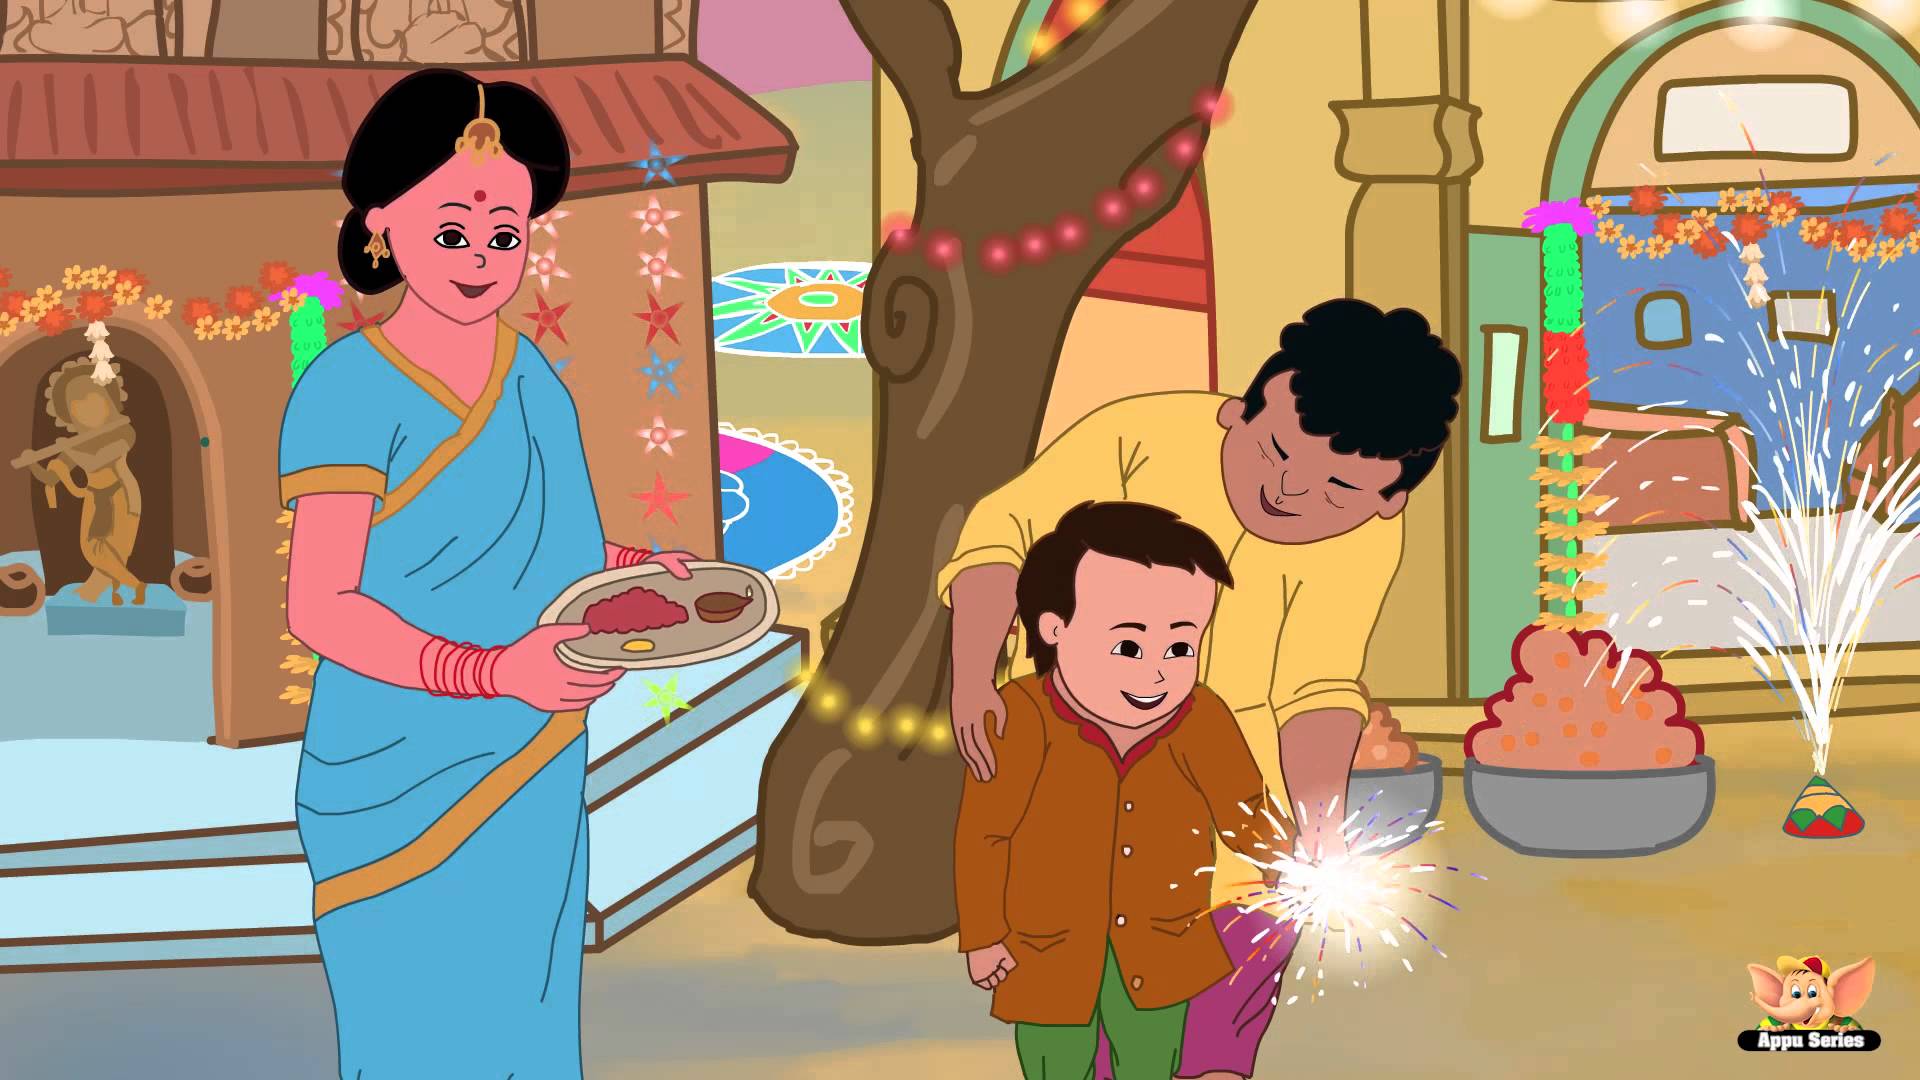 Happy Diwali - Nursery Rhyme in Tamil - Appu Series